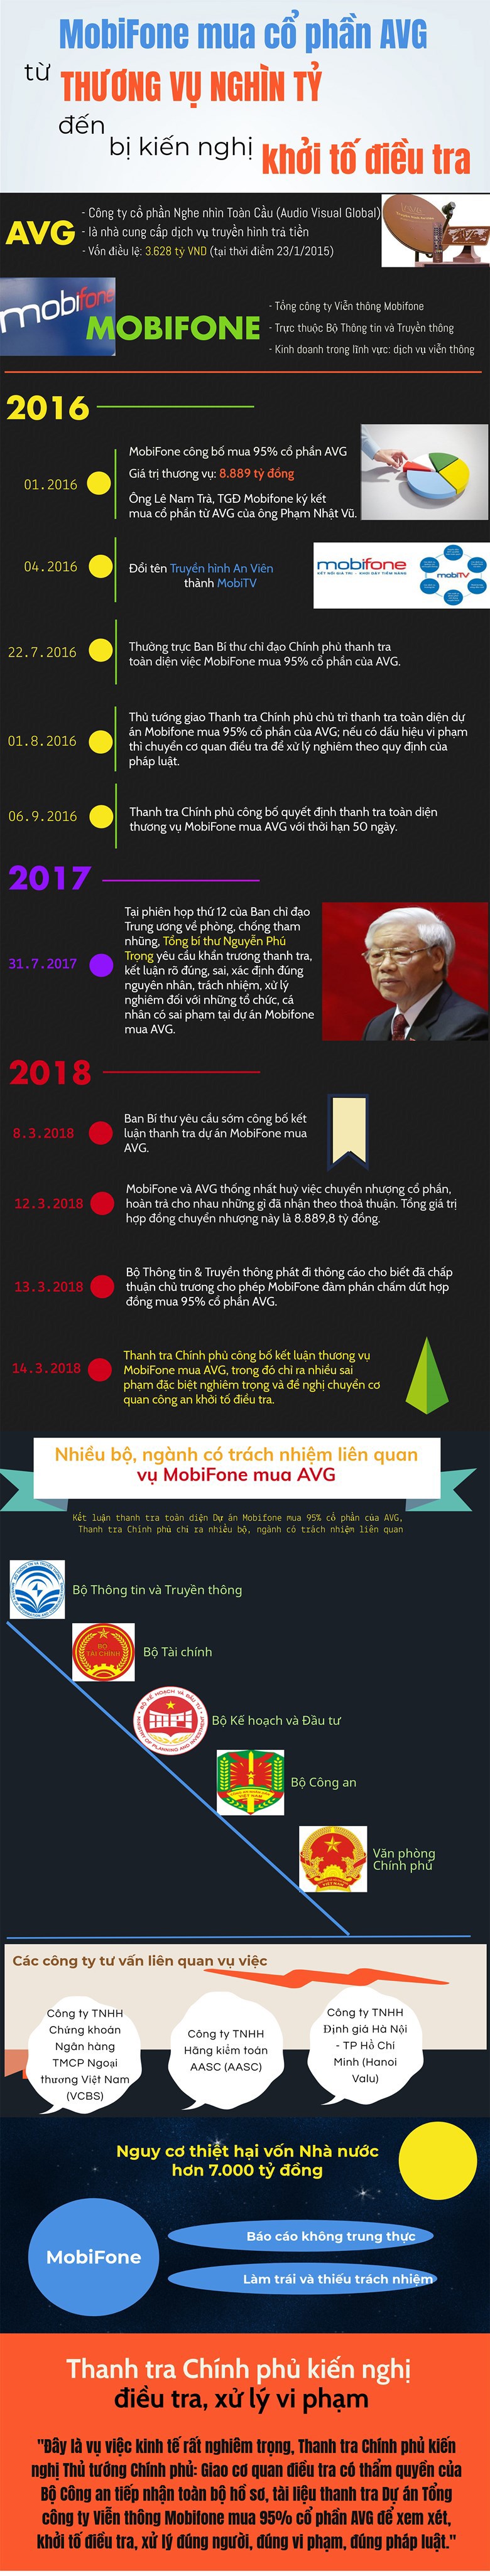 Infographic: Toàn cảnh thương vụ nghìn tỷ Mobifone mua AVG - Ảnh 1